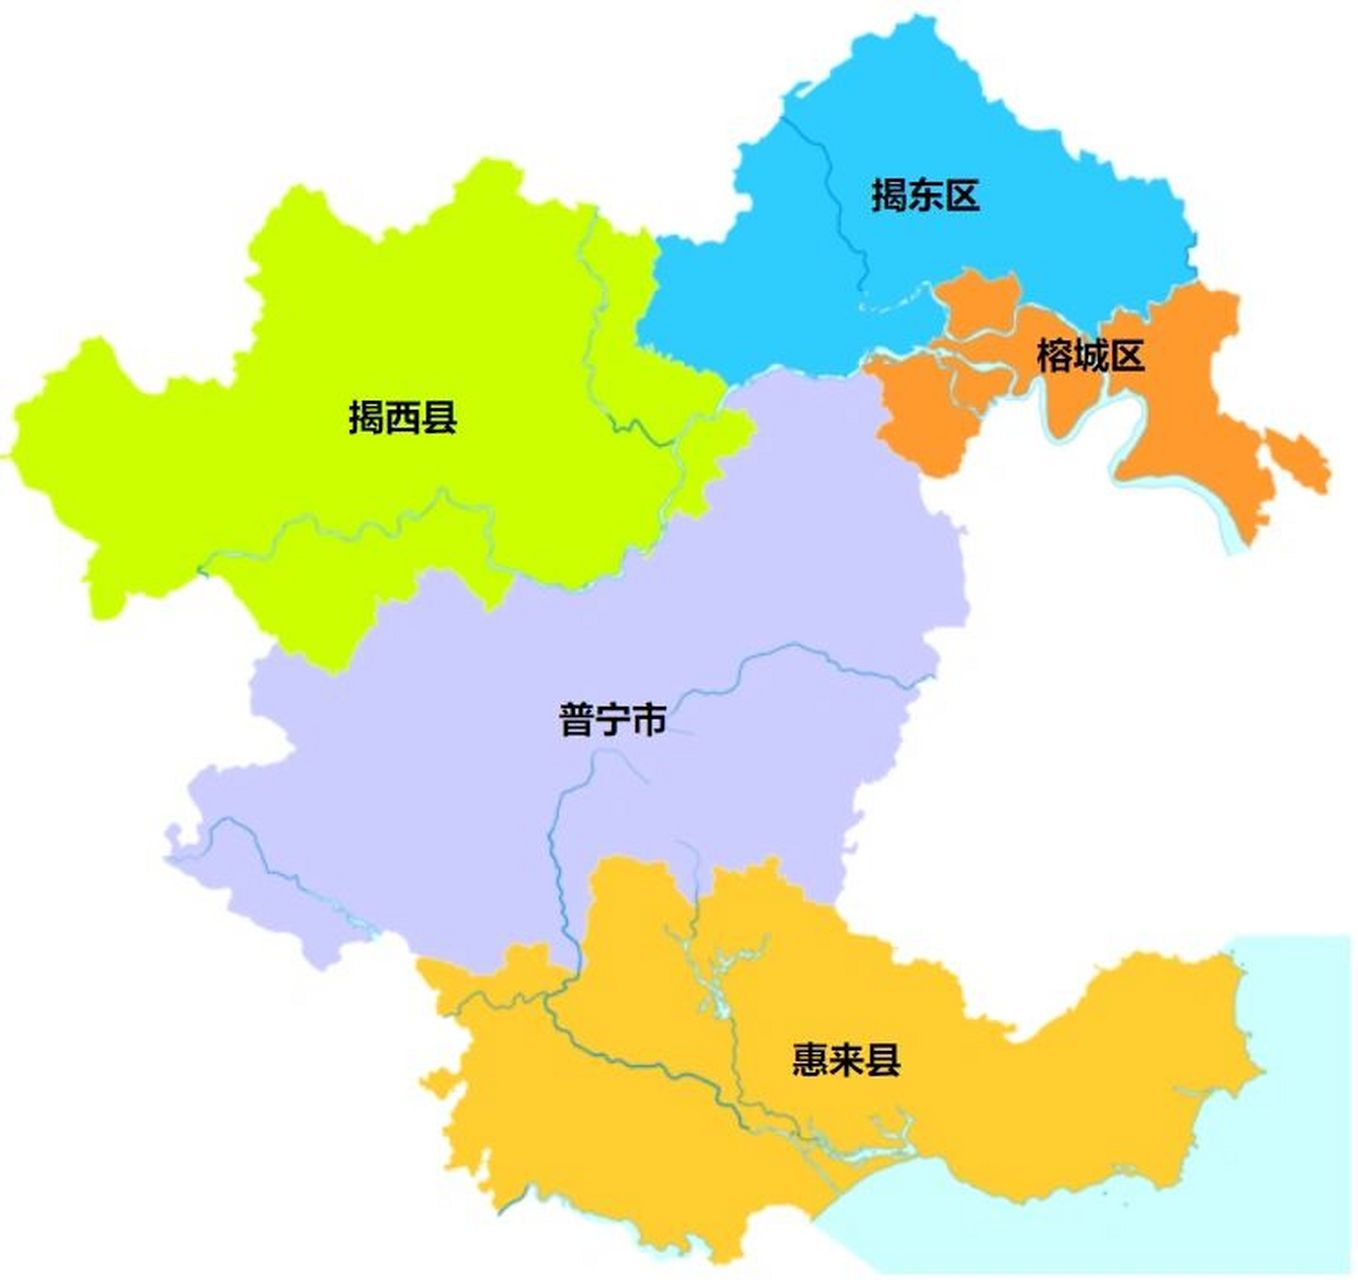 潮汕地区行政区划 潮州市,广东省辖地级市,总面积为3146平方公里,常住